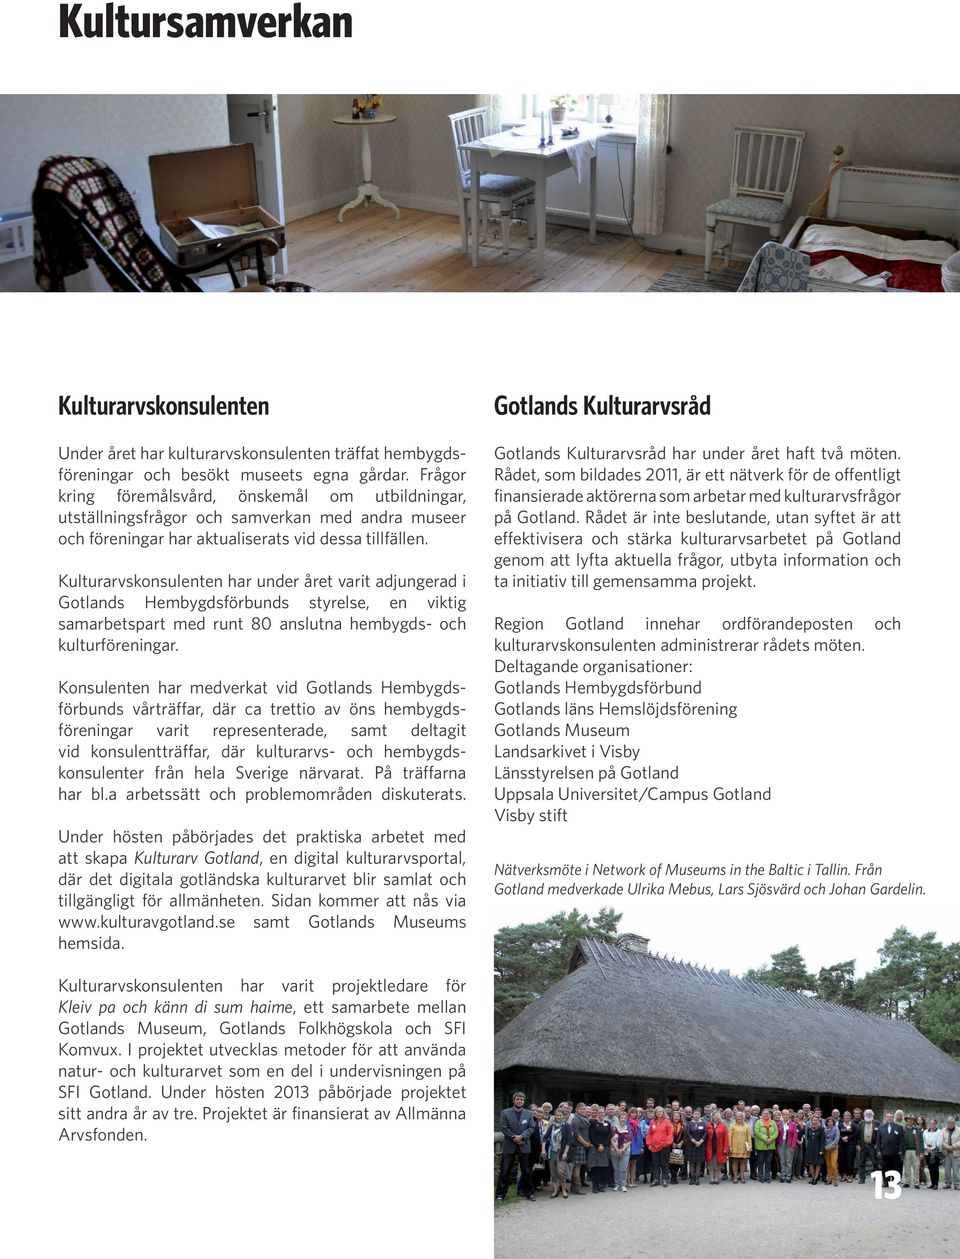 Kulturarvskonsulenten har under året varit adjungerad i Gotlands Hembygdsförbunds styrelse, en viktig samarbetspart med runt 80 anslutna hembygds- och kulturföreningar.